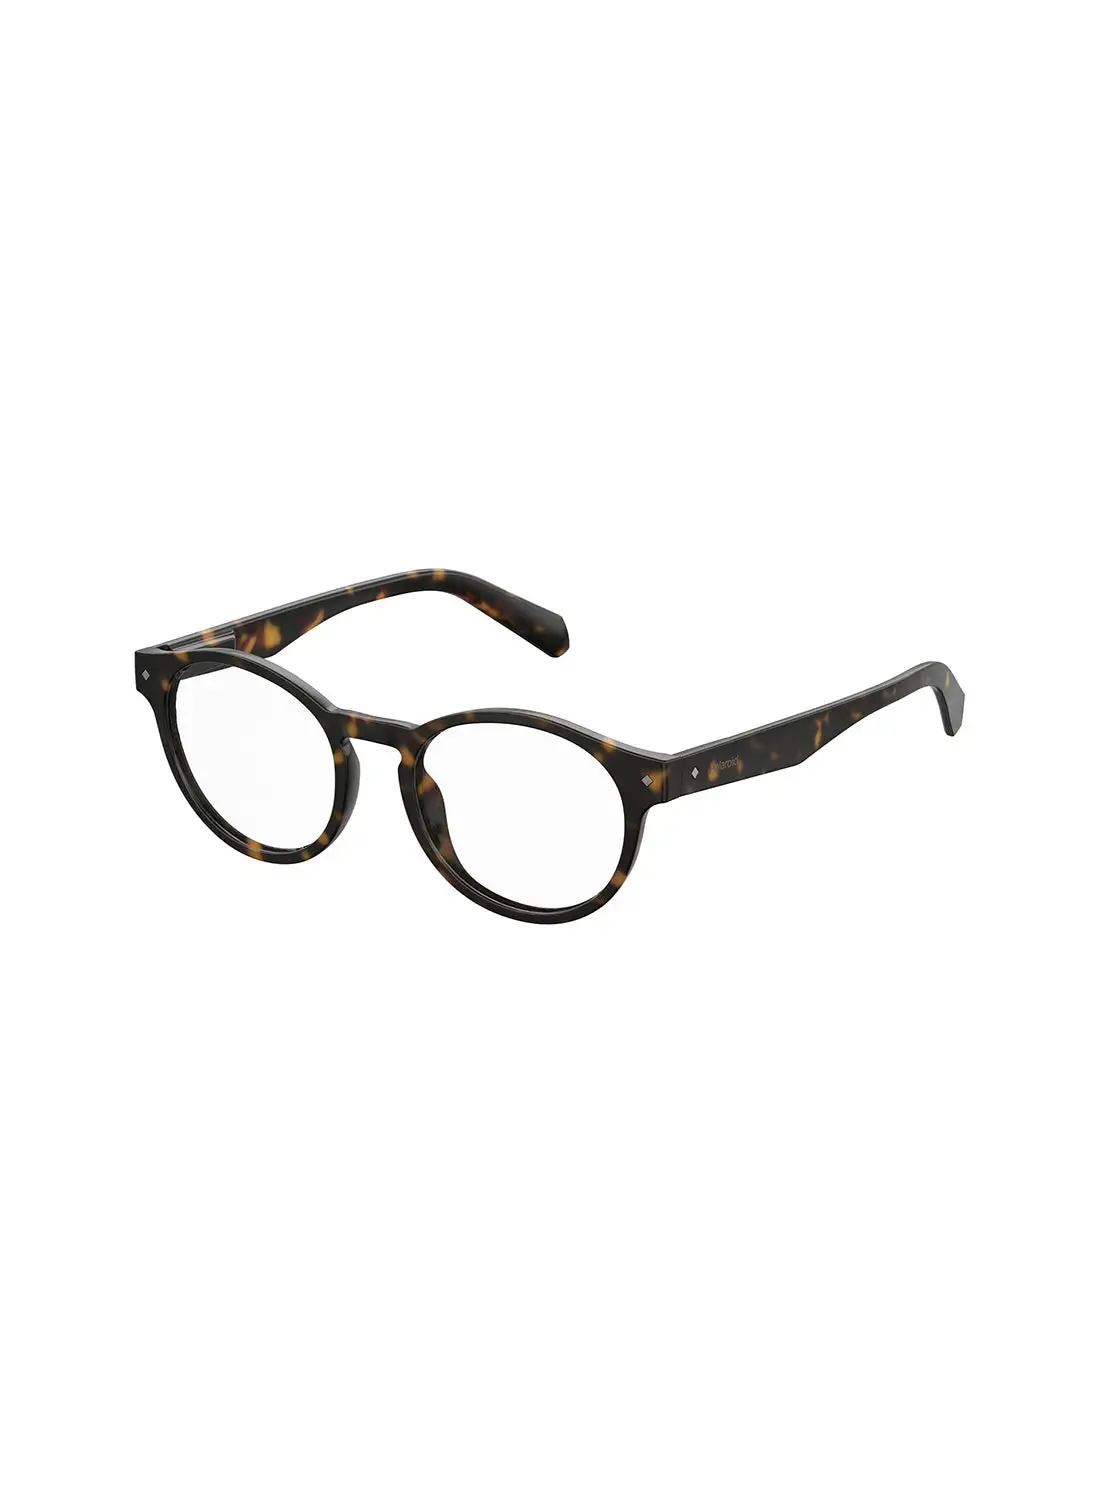 Polaroid Unisex Oval Reading Glasses - Pld 0021/R Havana 49 - Lens Size: 49 Mm